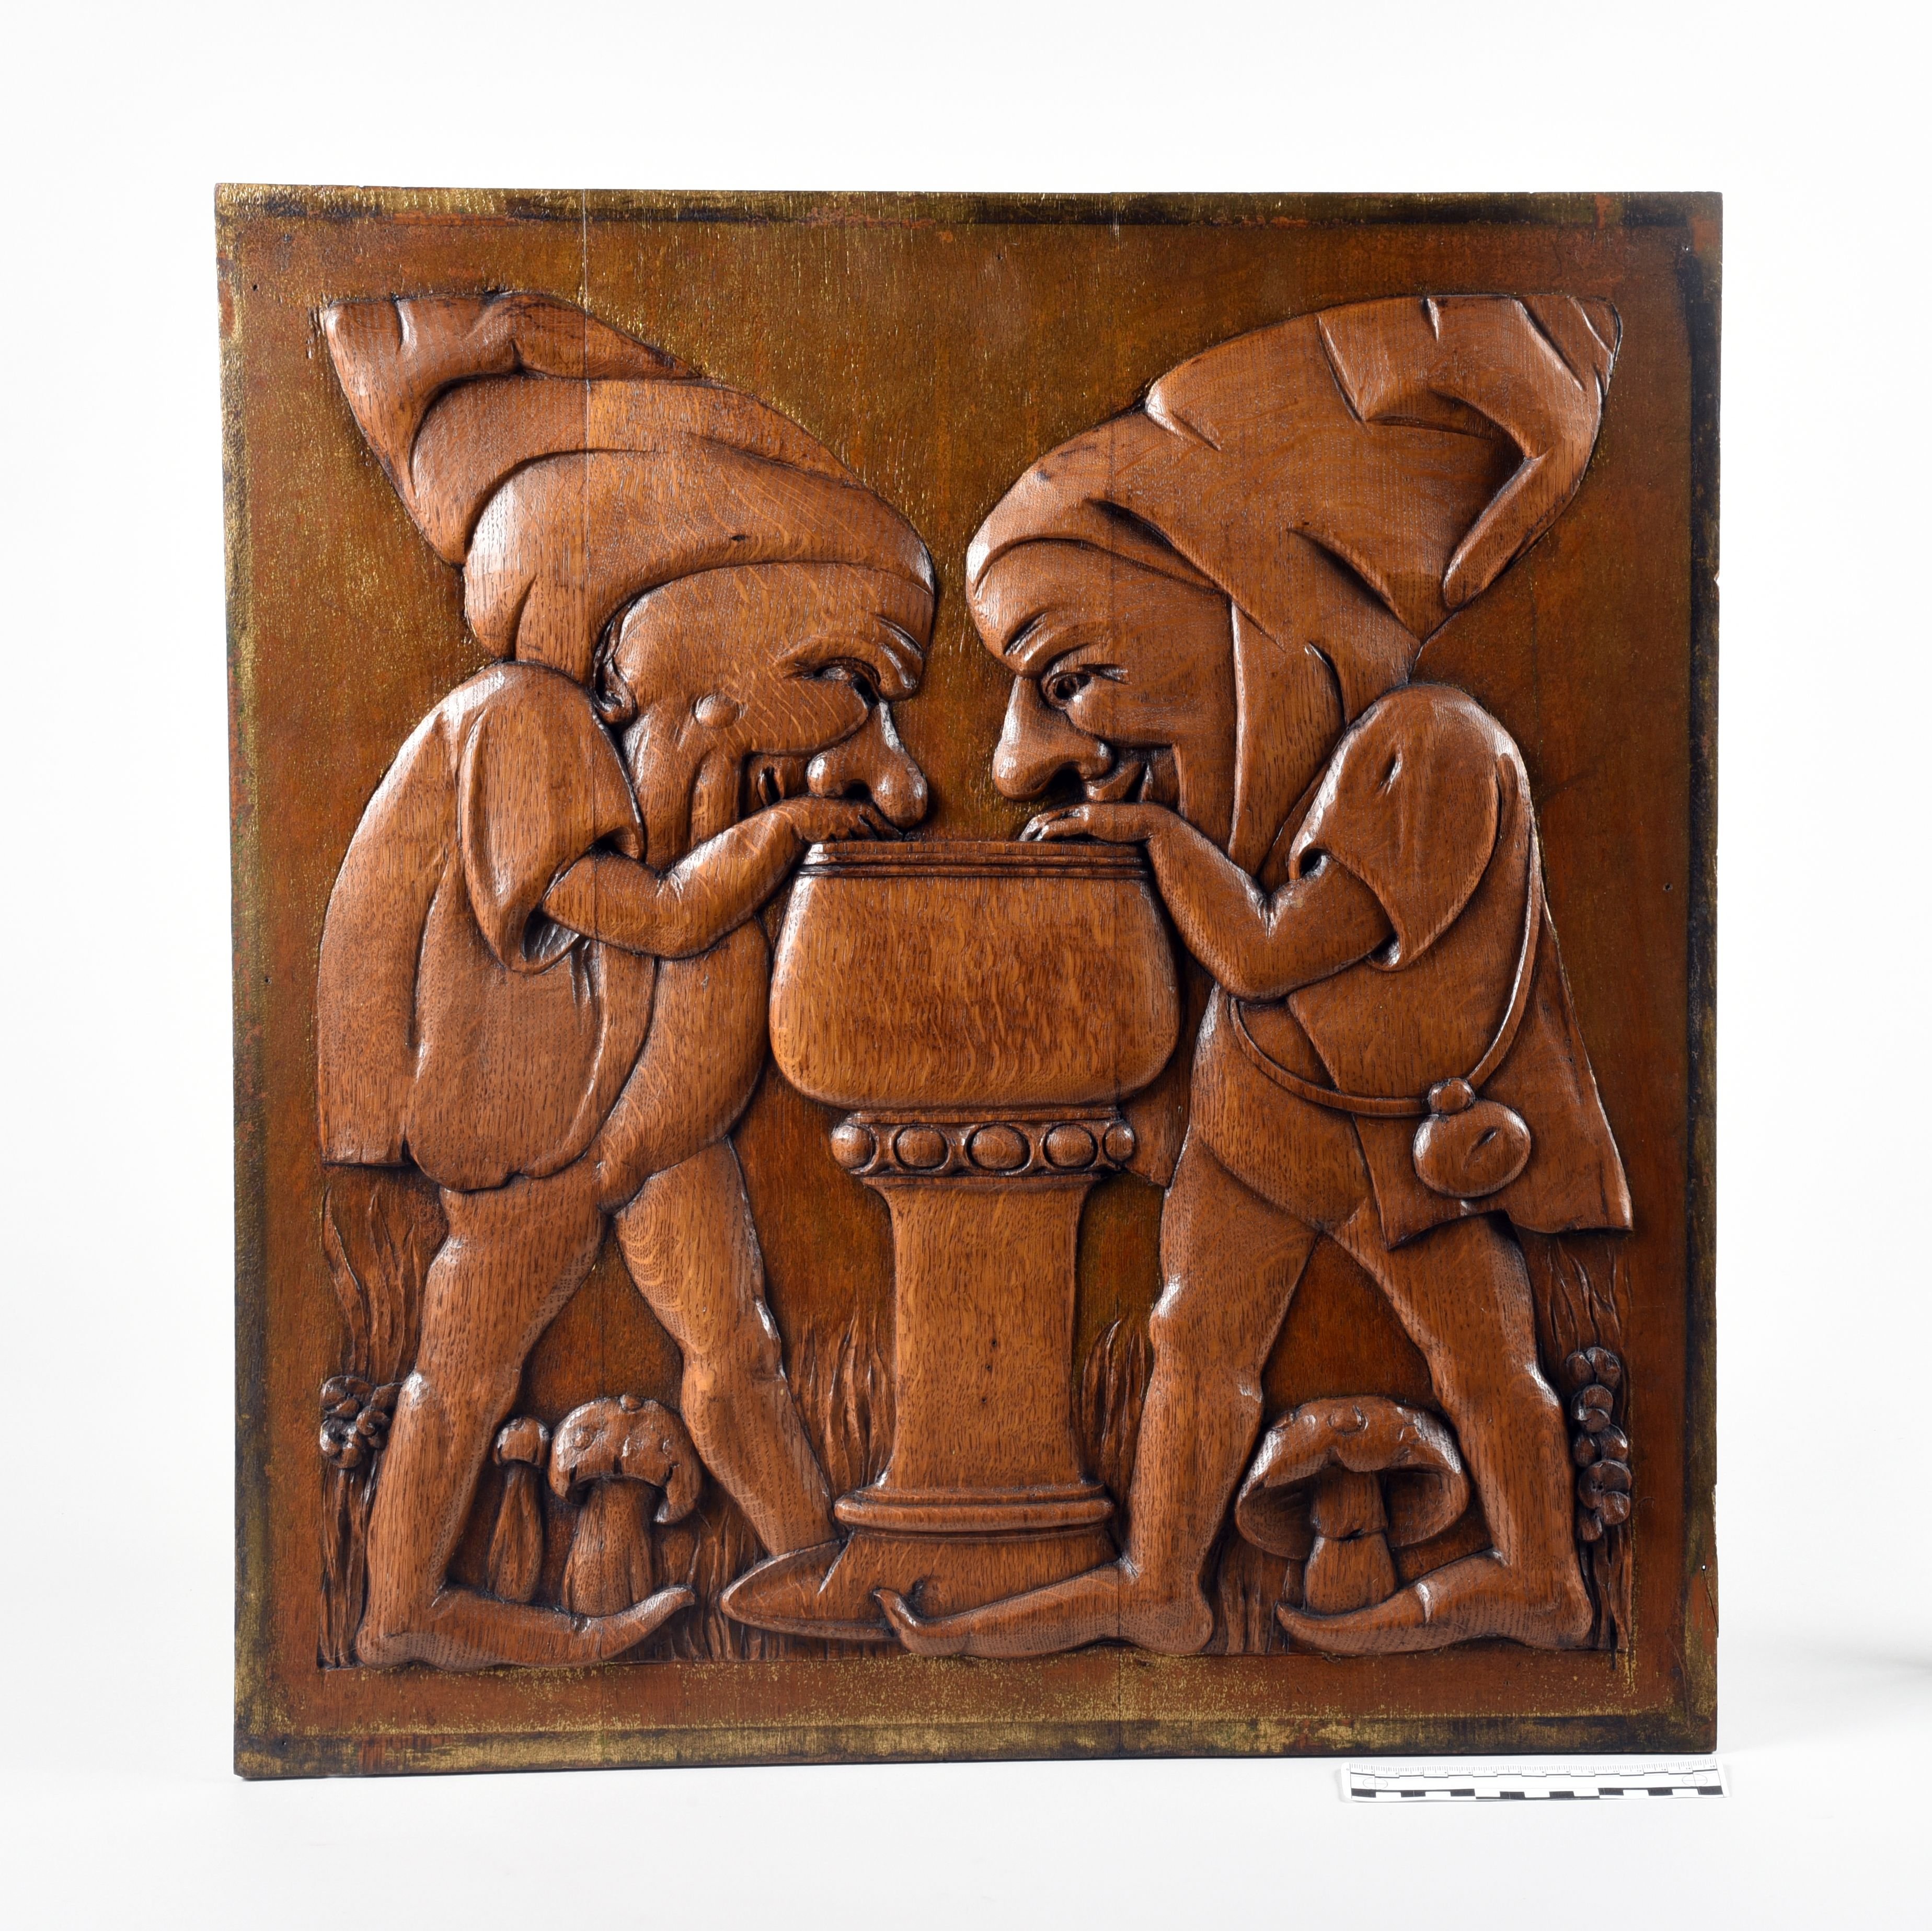 Relieftafel einer Gaststätte mit Zwergen an einem Weinglas (Stadtmuseum Lichtenstein CC BY-NC-SA)